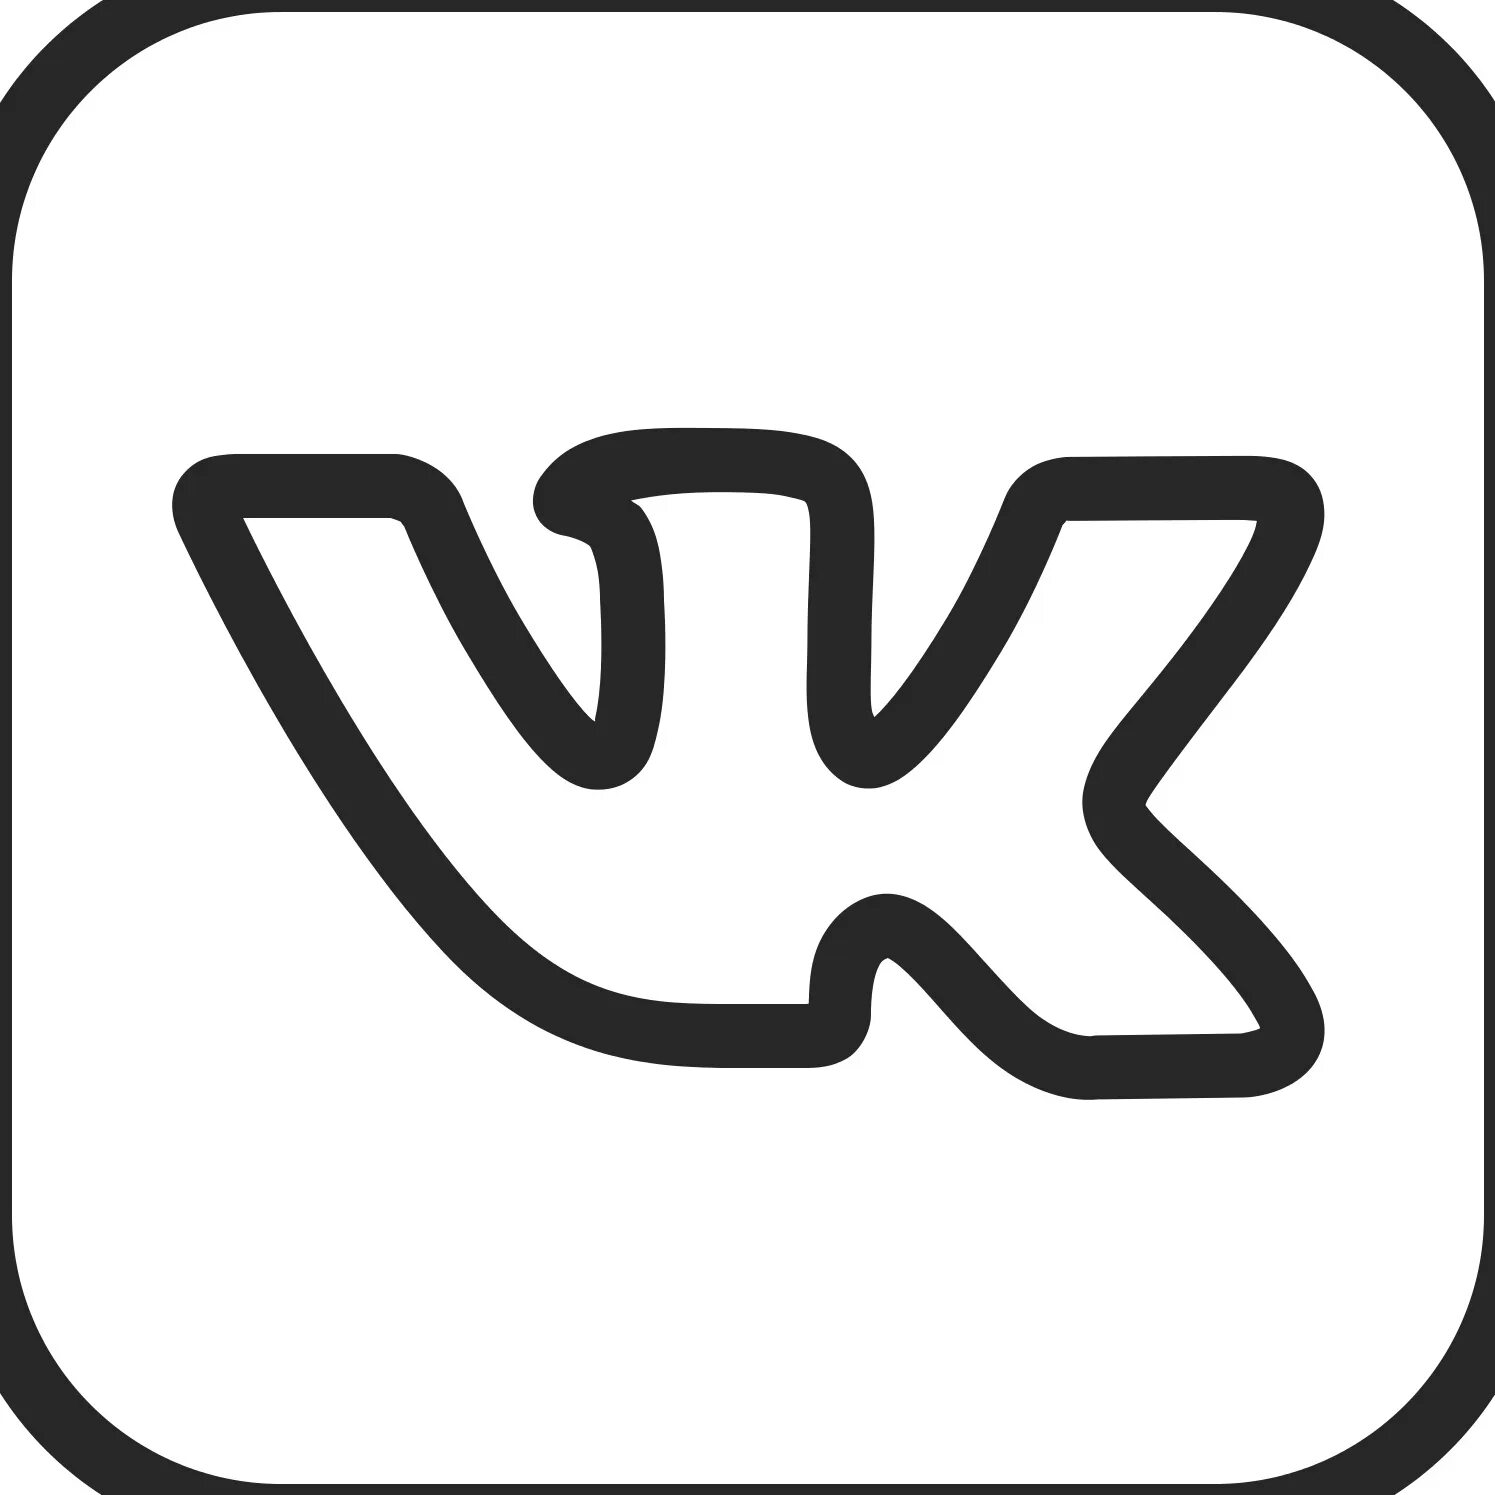 Черных вк. Иконка ВК вектор. ИК значок. Значок Вики. АВК логотип.